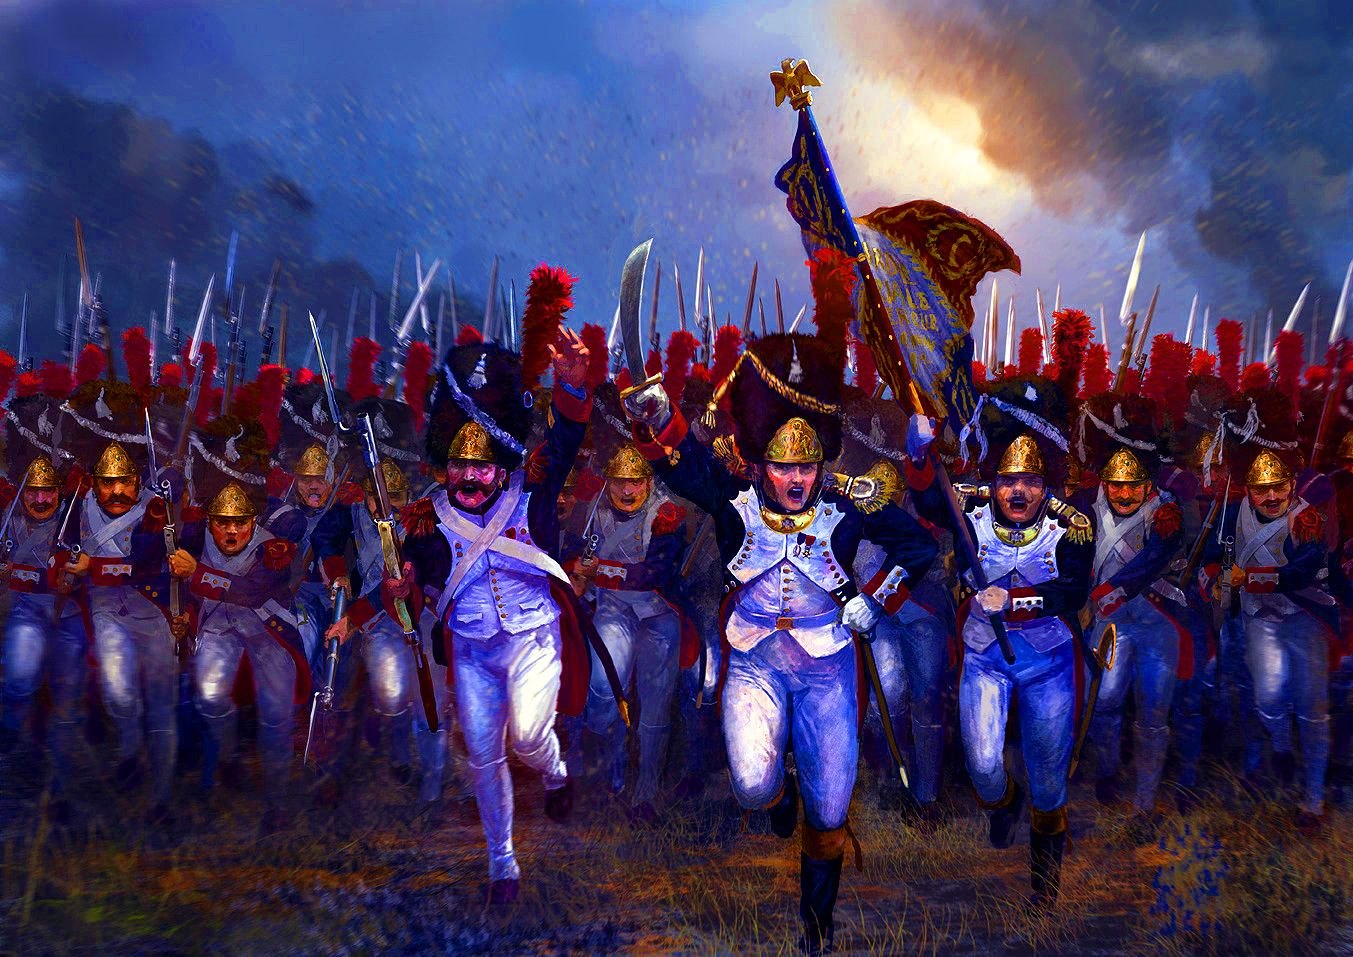 Франция времен империи. Гвардия Наполеона Ватерлоо. Старая гвардия Наполеона 1812. Наполеон Бонапарт битва при Ватерлоо. Французская гвардия 1812.